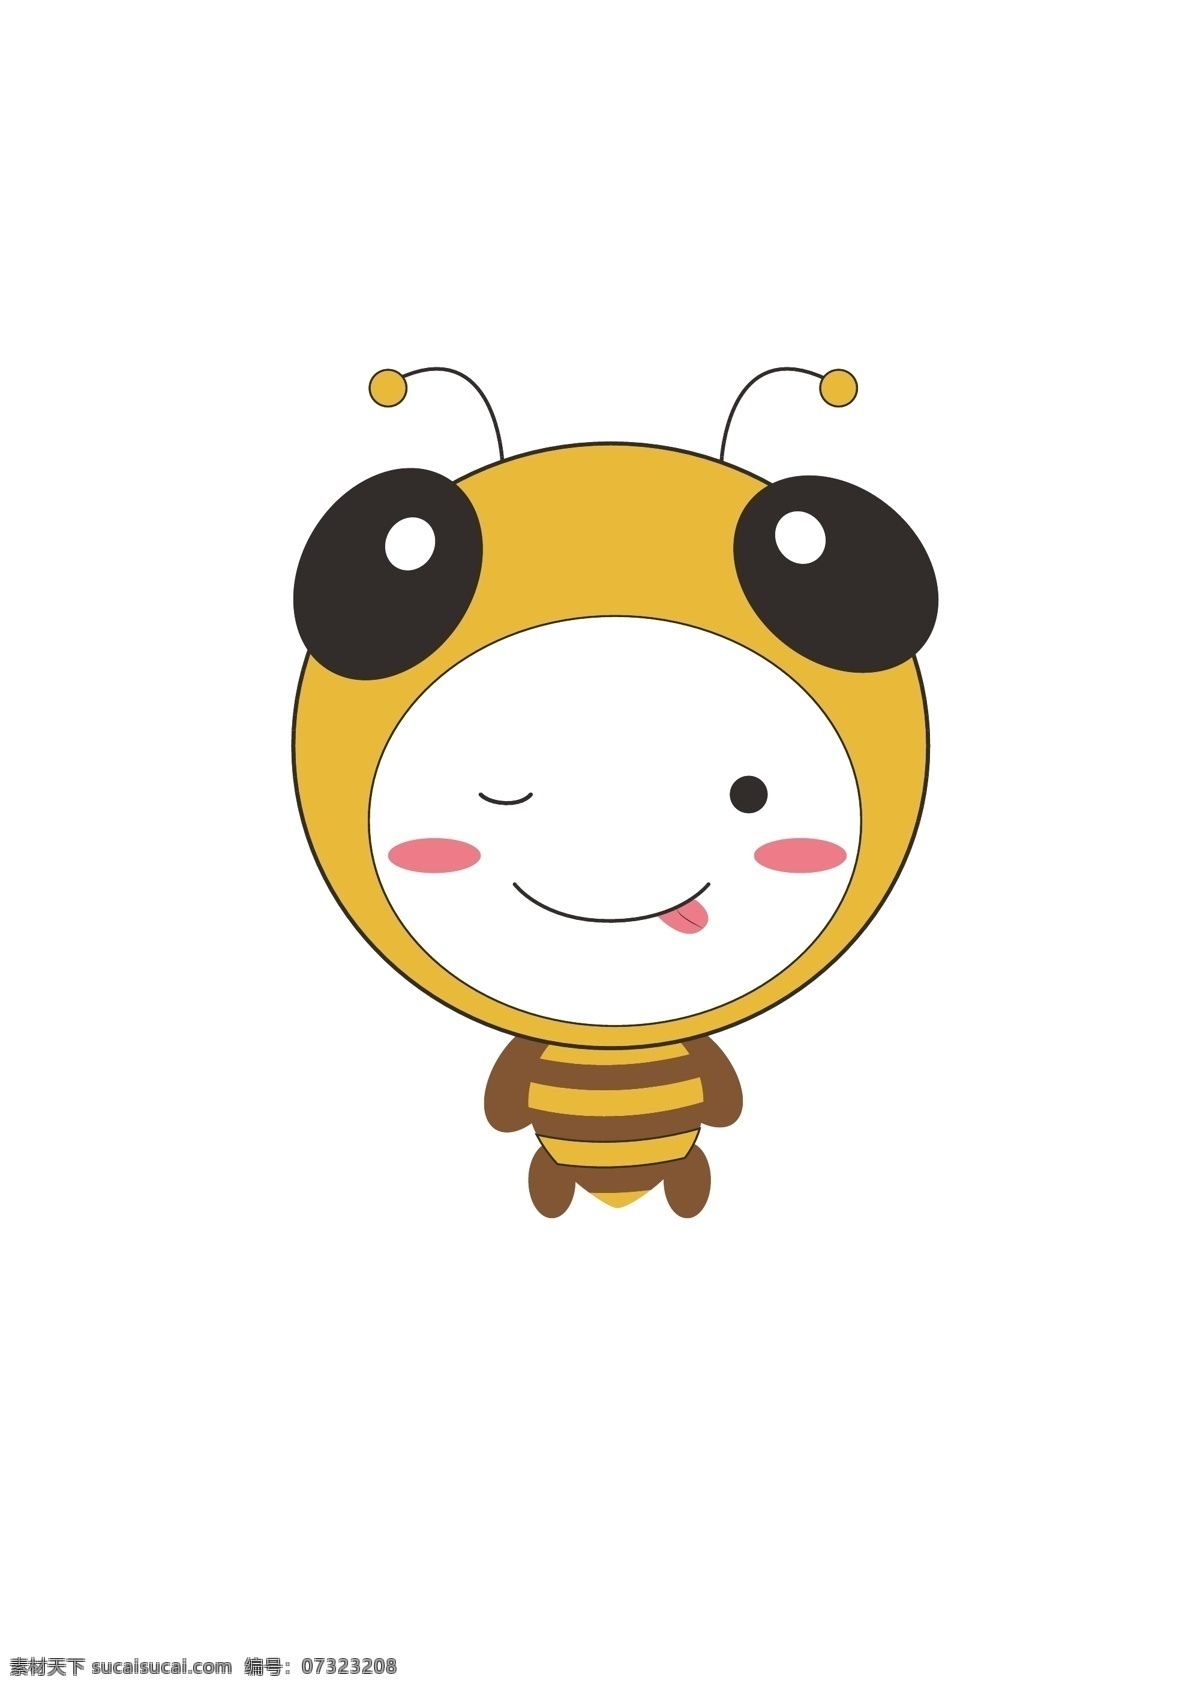 可爱q版蜜蜂 蜜蜂 卡通蜜蜂 矢量蜜蜂 手绘蜜蜂 蜜蜂素材 卡通小蜜蜂 可爱动物 可爱小蜜蜂 底纹边框 背景底纹 q版 ai矢量图库 动漫动画 动漫人物